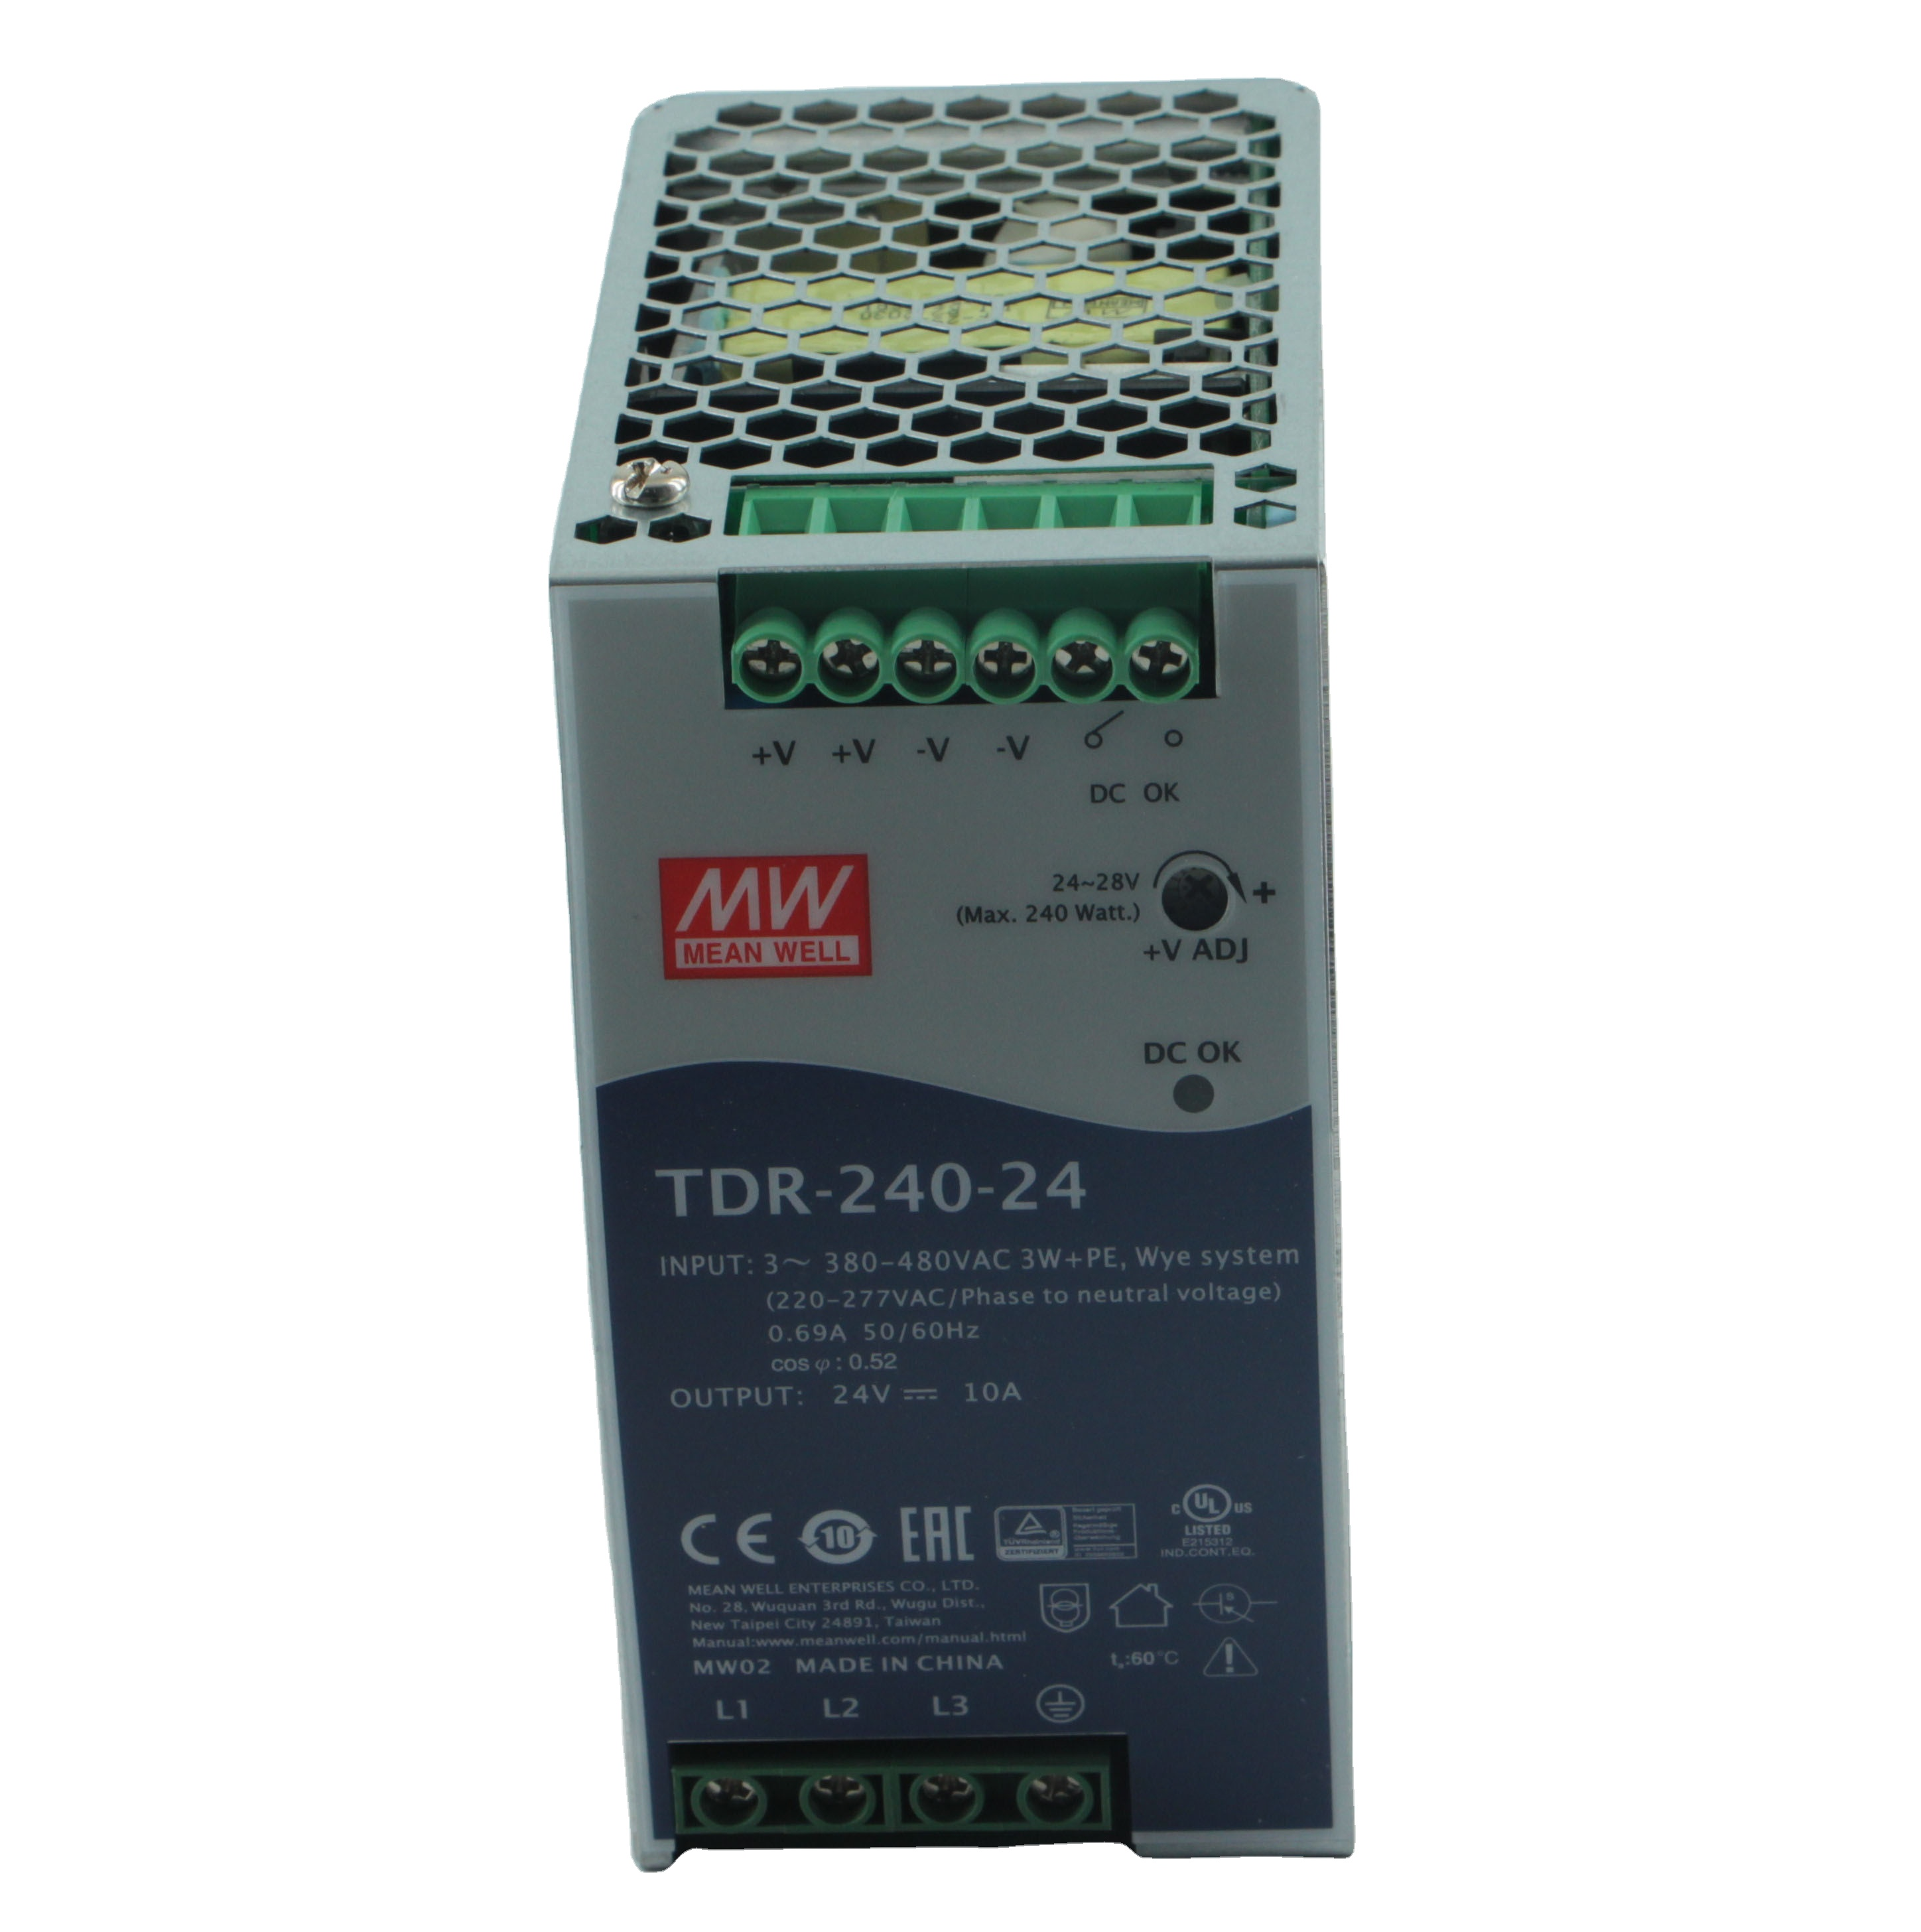 Nakup TDR trifazni 240W do 960W napajalnik za DIN tirnico,TDR trifazni 240W do 960W napajalnik za DIN tirnico Cena,TDR trifazni 240W do 960W napajalnik za DIN tirnico blagovne znamke,TDR trifazni 240W do 960W napajalnik za DIN tirnico Proizvajalec,TDR trifazni 240W do 960W napajalnik za DIN tirnico Quotes,TDR trifazni 240W do 960W napajalnik za DIN tirnico podjetje.